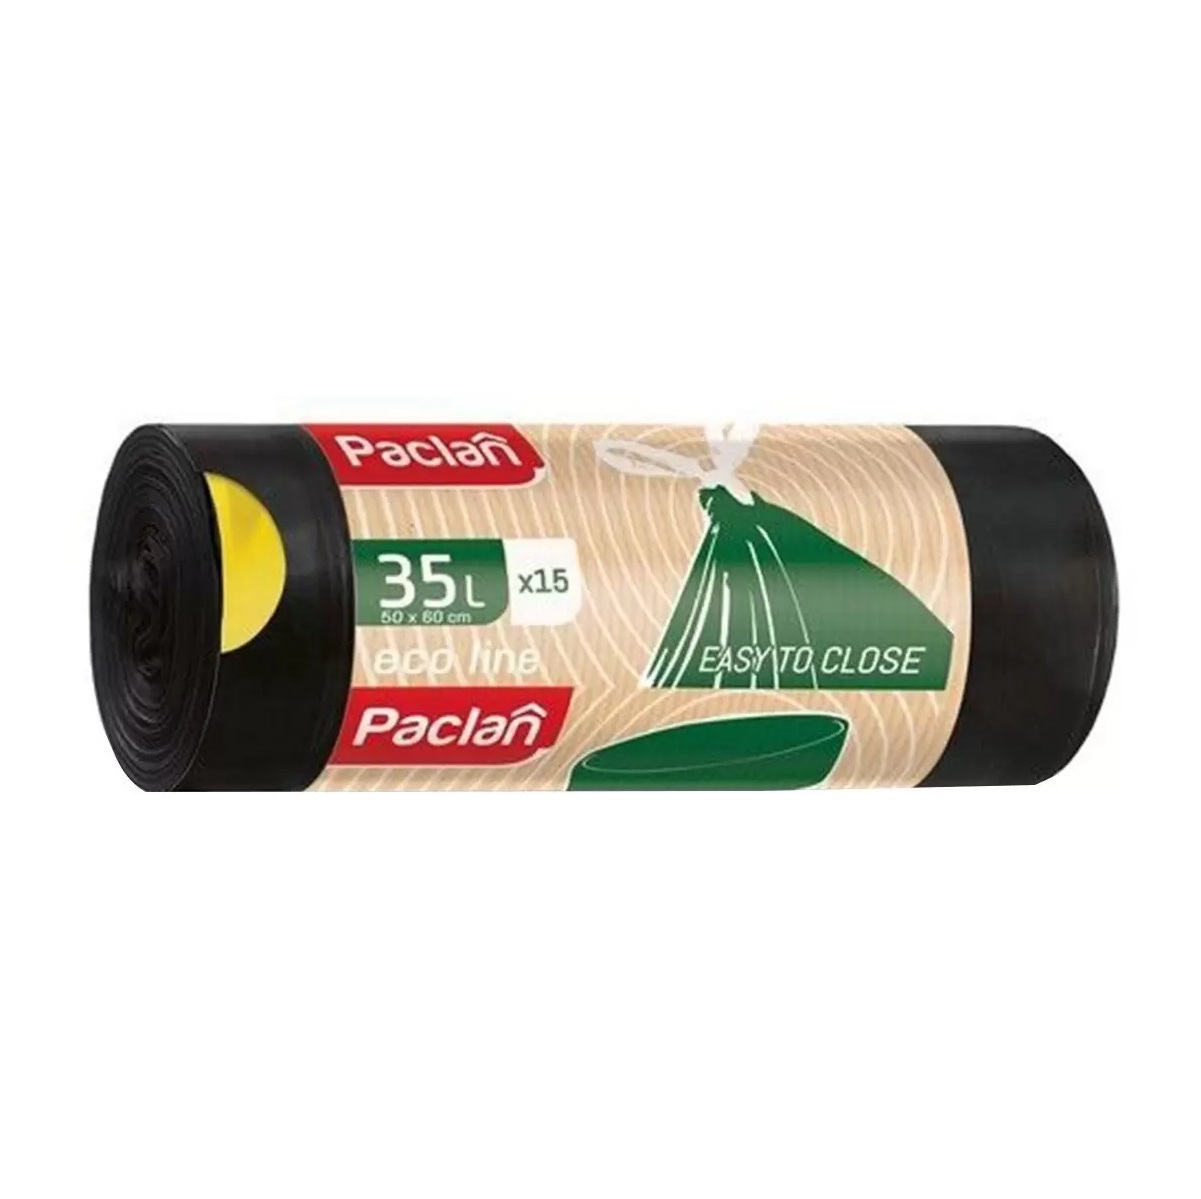 Мешки мусорные PACLAN Eco line 35л 15шт мешки мусорные paclan eco line 35л 15шт